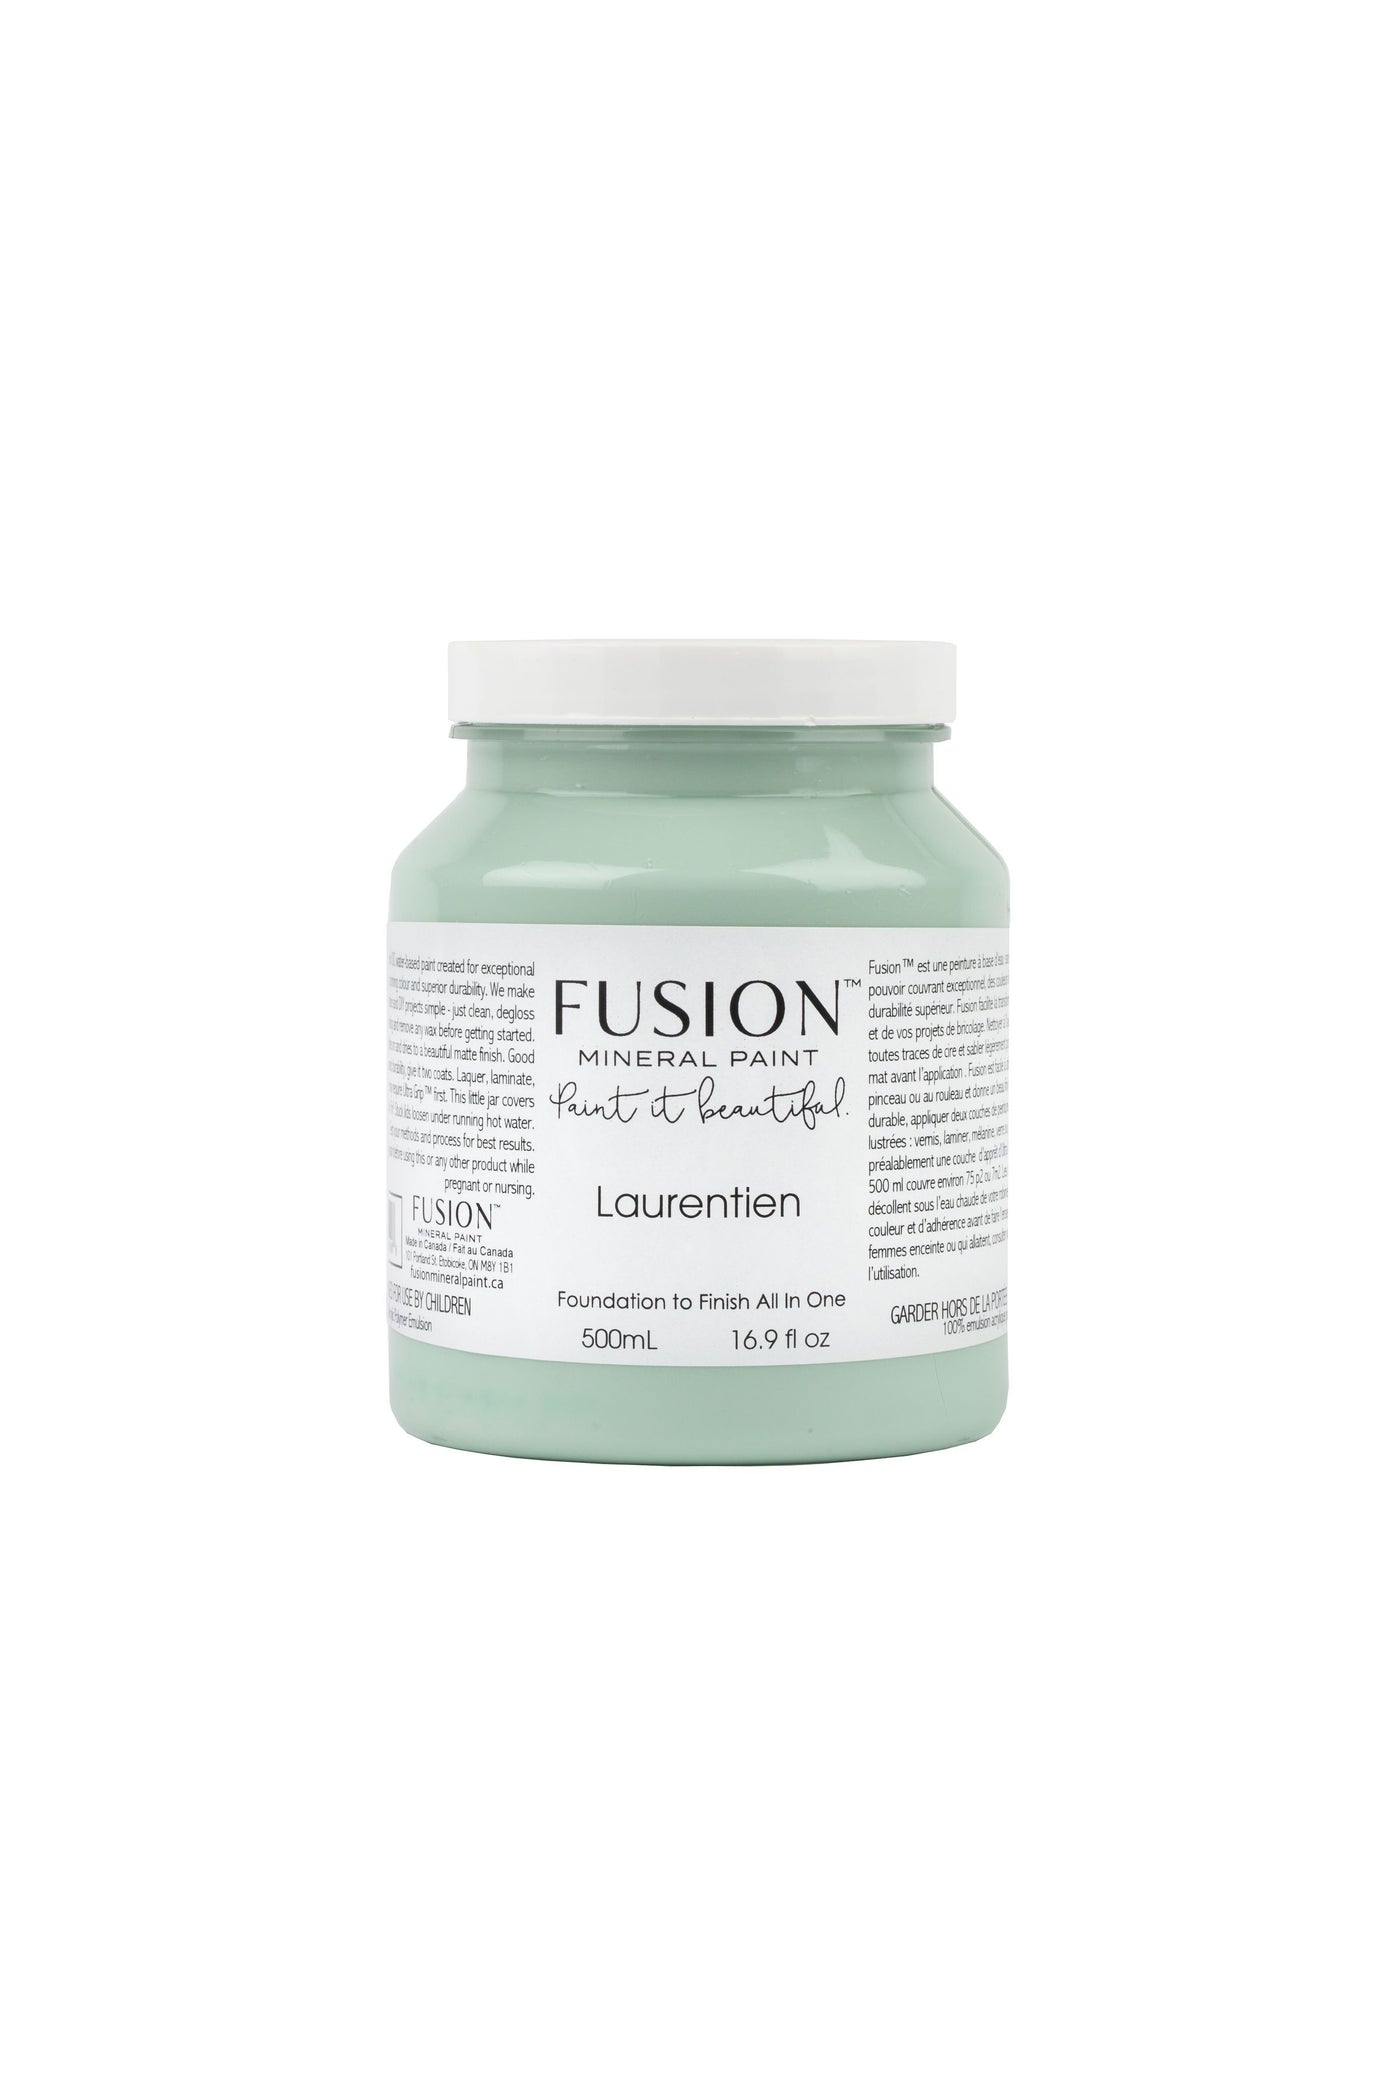 Fusion Mineral Paint - LAURENTIEN mint green 500ml